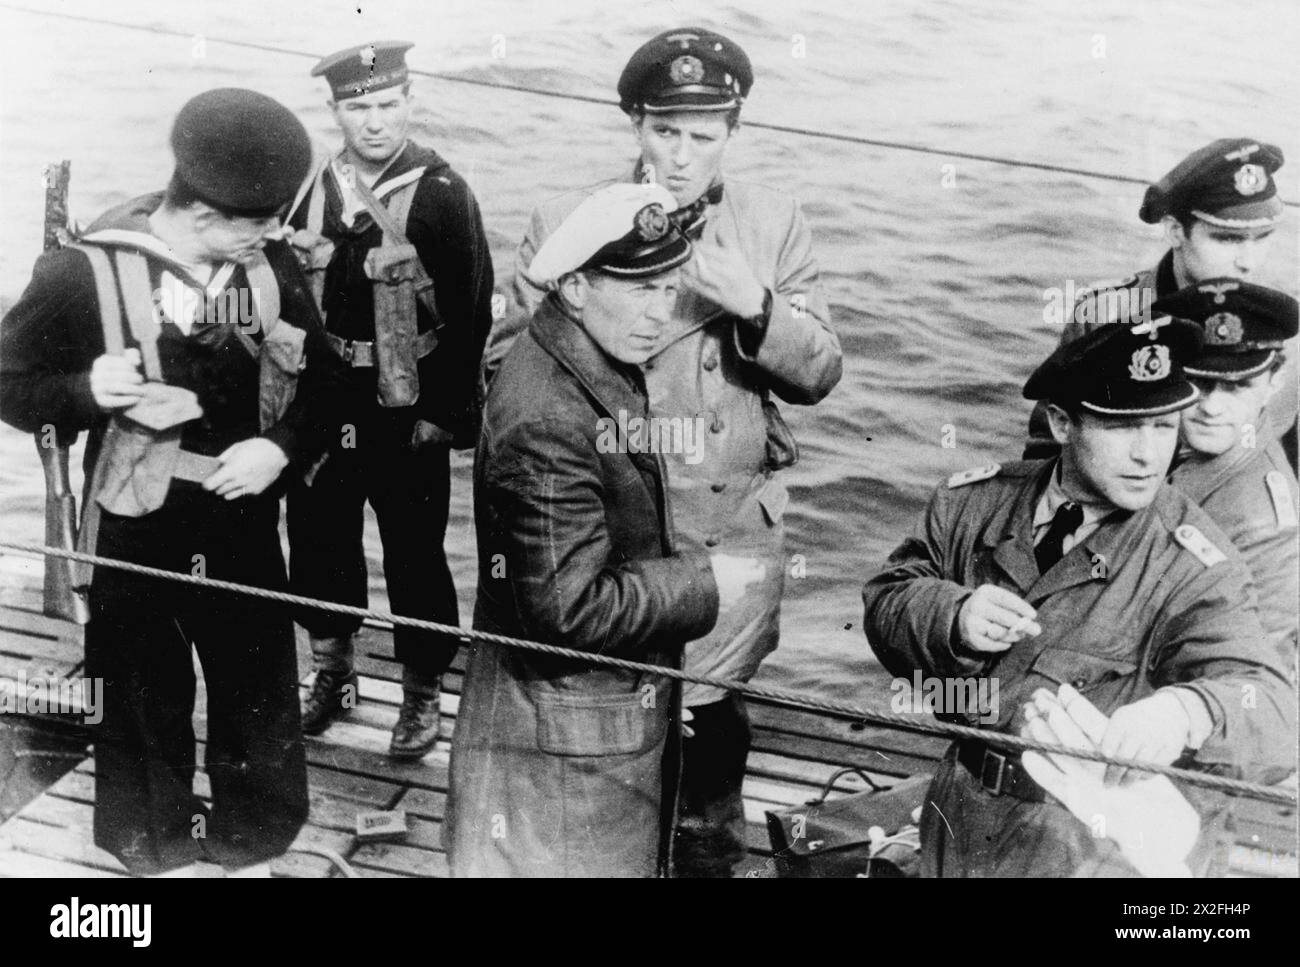 LA REDDITION DE LA KRIEGSMARINE AUX FORCES ALLIÉES À LA FIN DE LA SECONDE GUERRE MONDIALE - Oberleutnant zur See Uwe Kock, le commandant de l'U-249, l'un des premiers U-boot à se rendre à la Royal Navy, et ses officiers sur le pont de leur bateau sous la garde de marins polonais dans la baie de Weymouth, 9 mai 1945 Marine polonaise, marine allemande, U-249, Kock, Uwe Banque D'Images